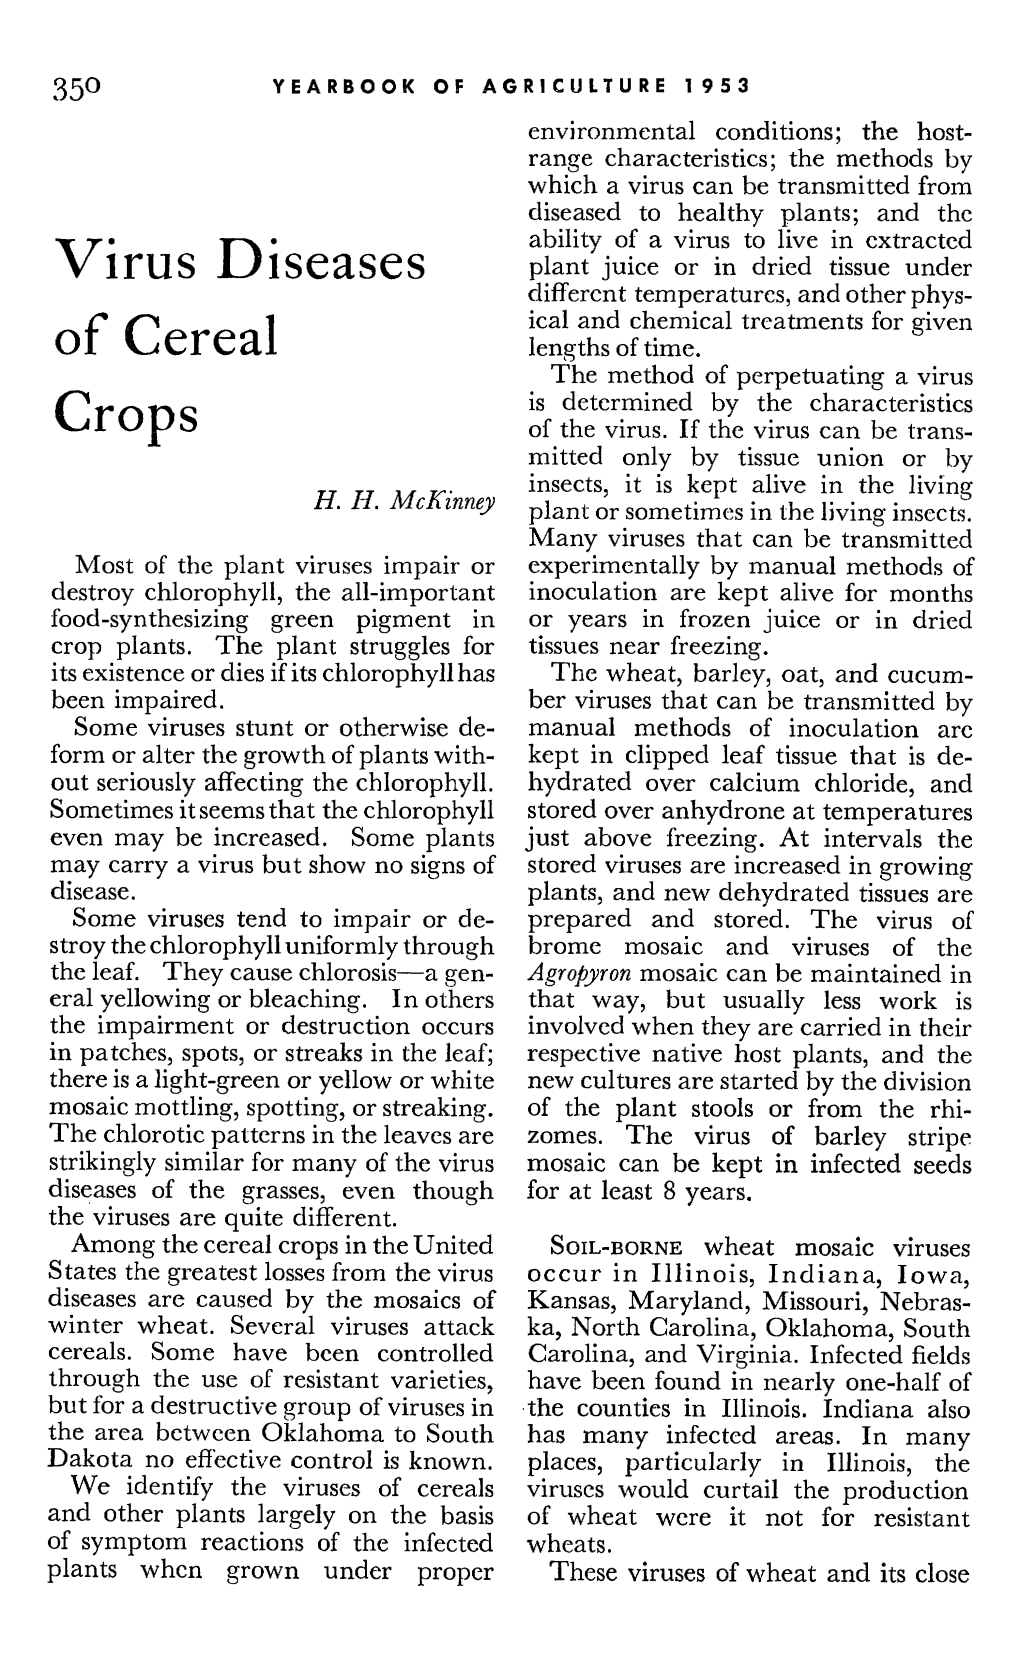 Virus Diseases of Cereal Crops